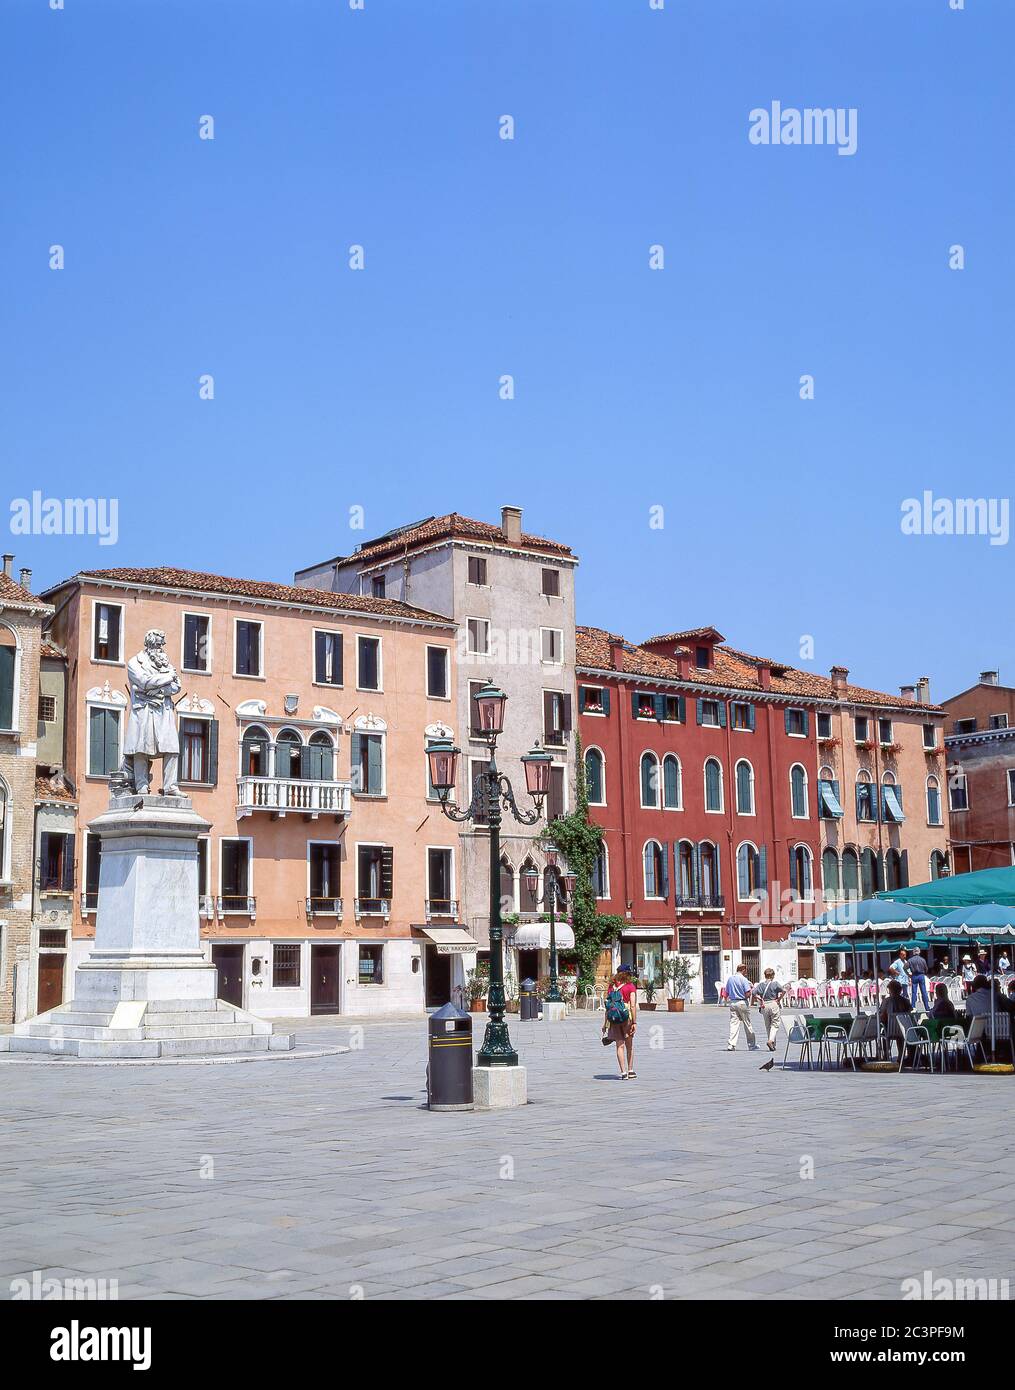 Palazzo Cavalli, Venice (Venezia), Veneto Region, Italy Stock Photo